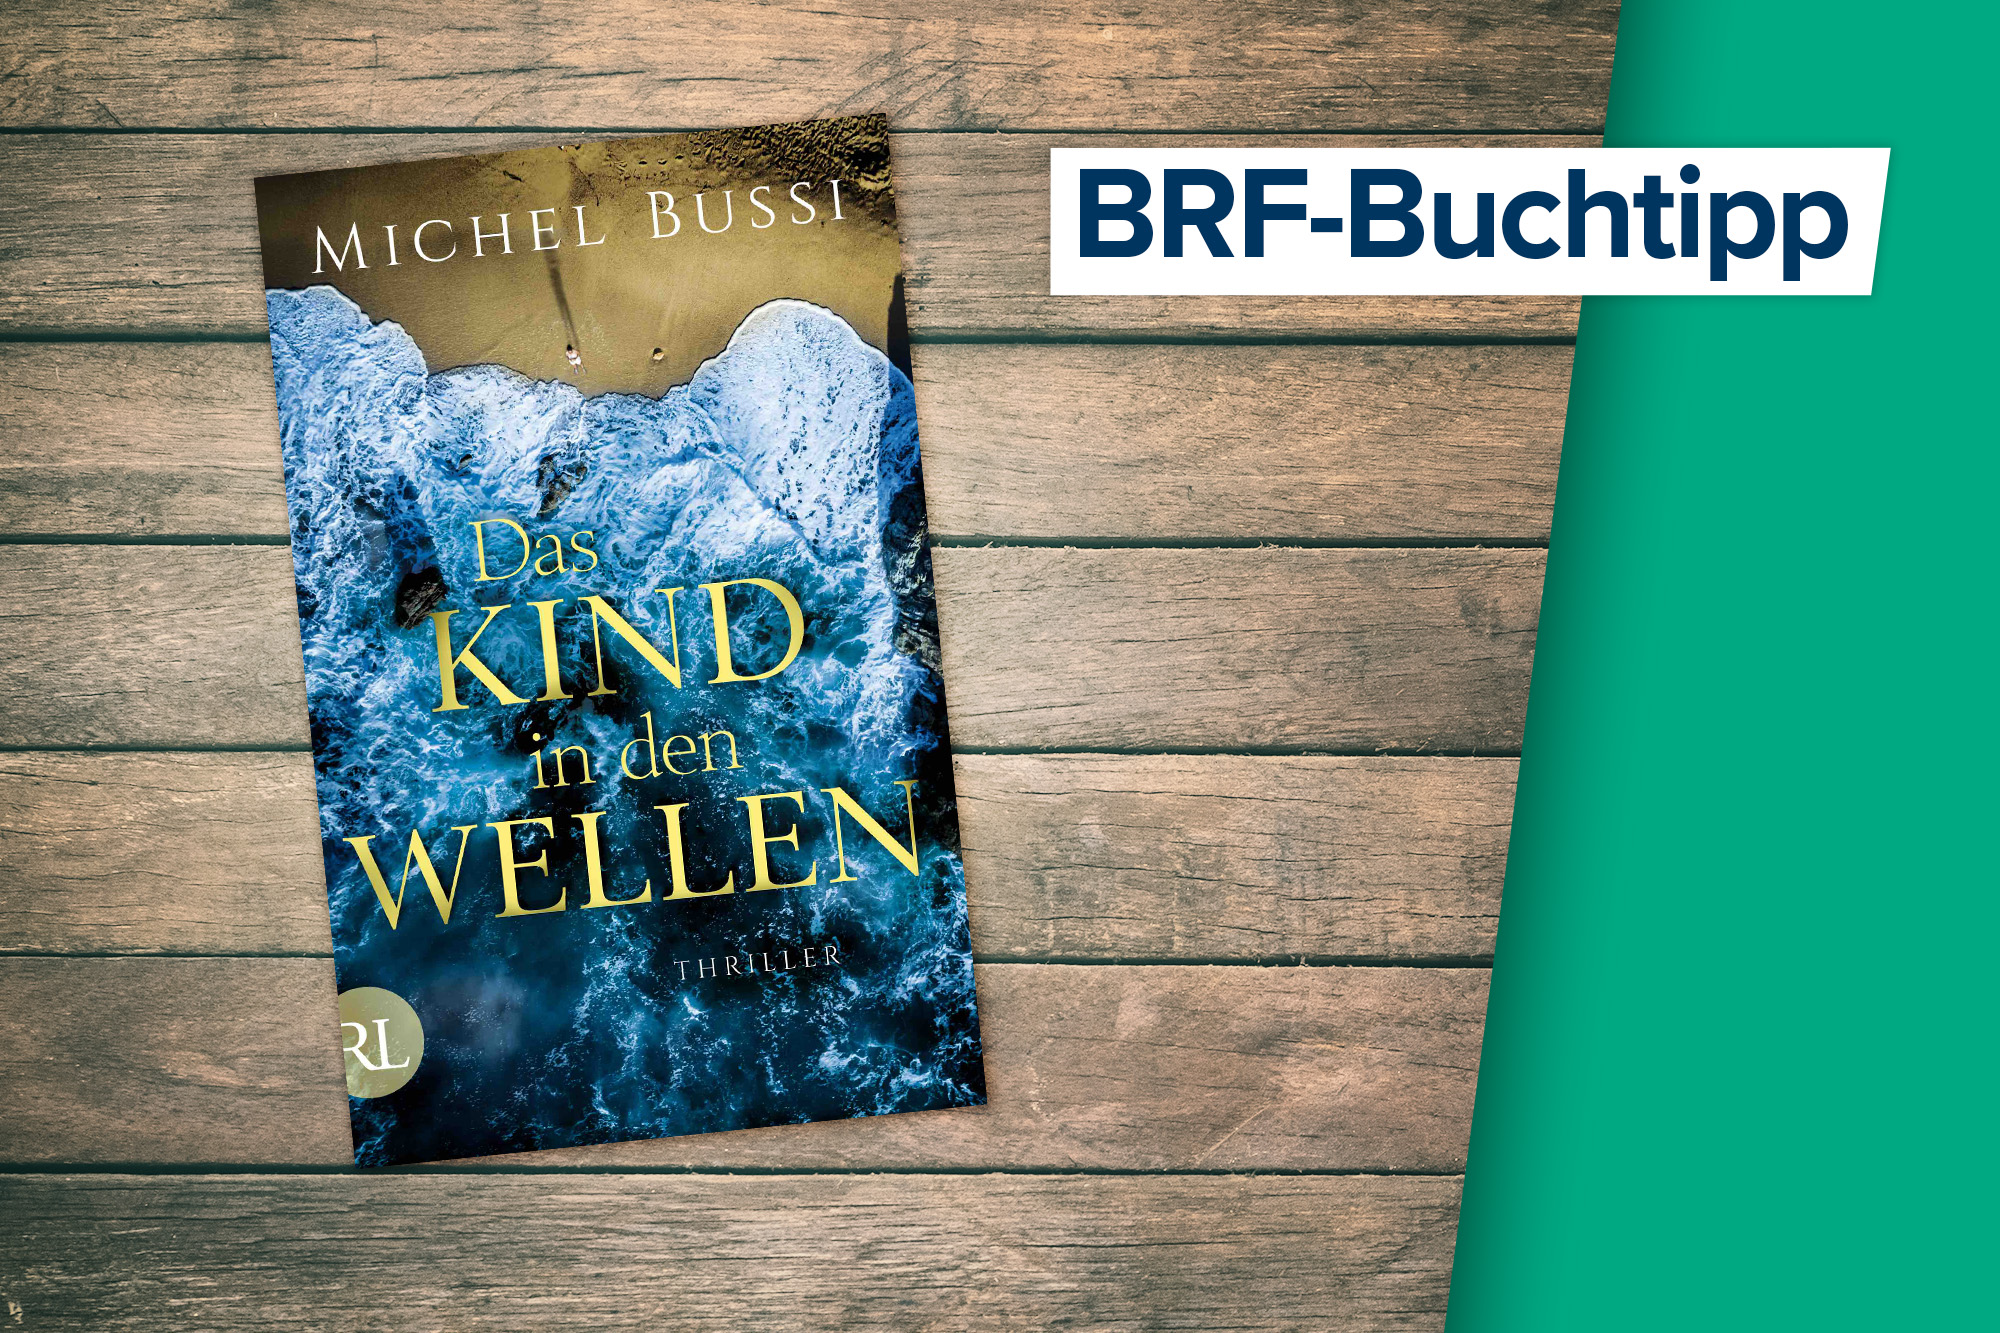 Der Buchtipp auf BRF1: "Das Kind in den Wellen" von Michel Bussi (rütten & loening Verlag)